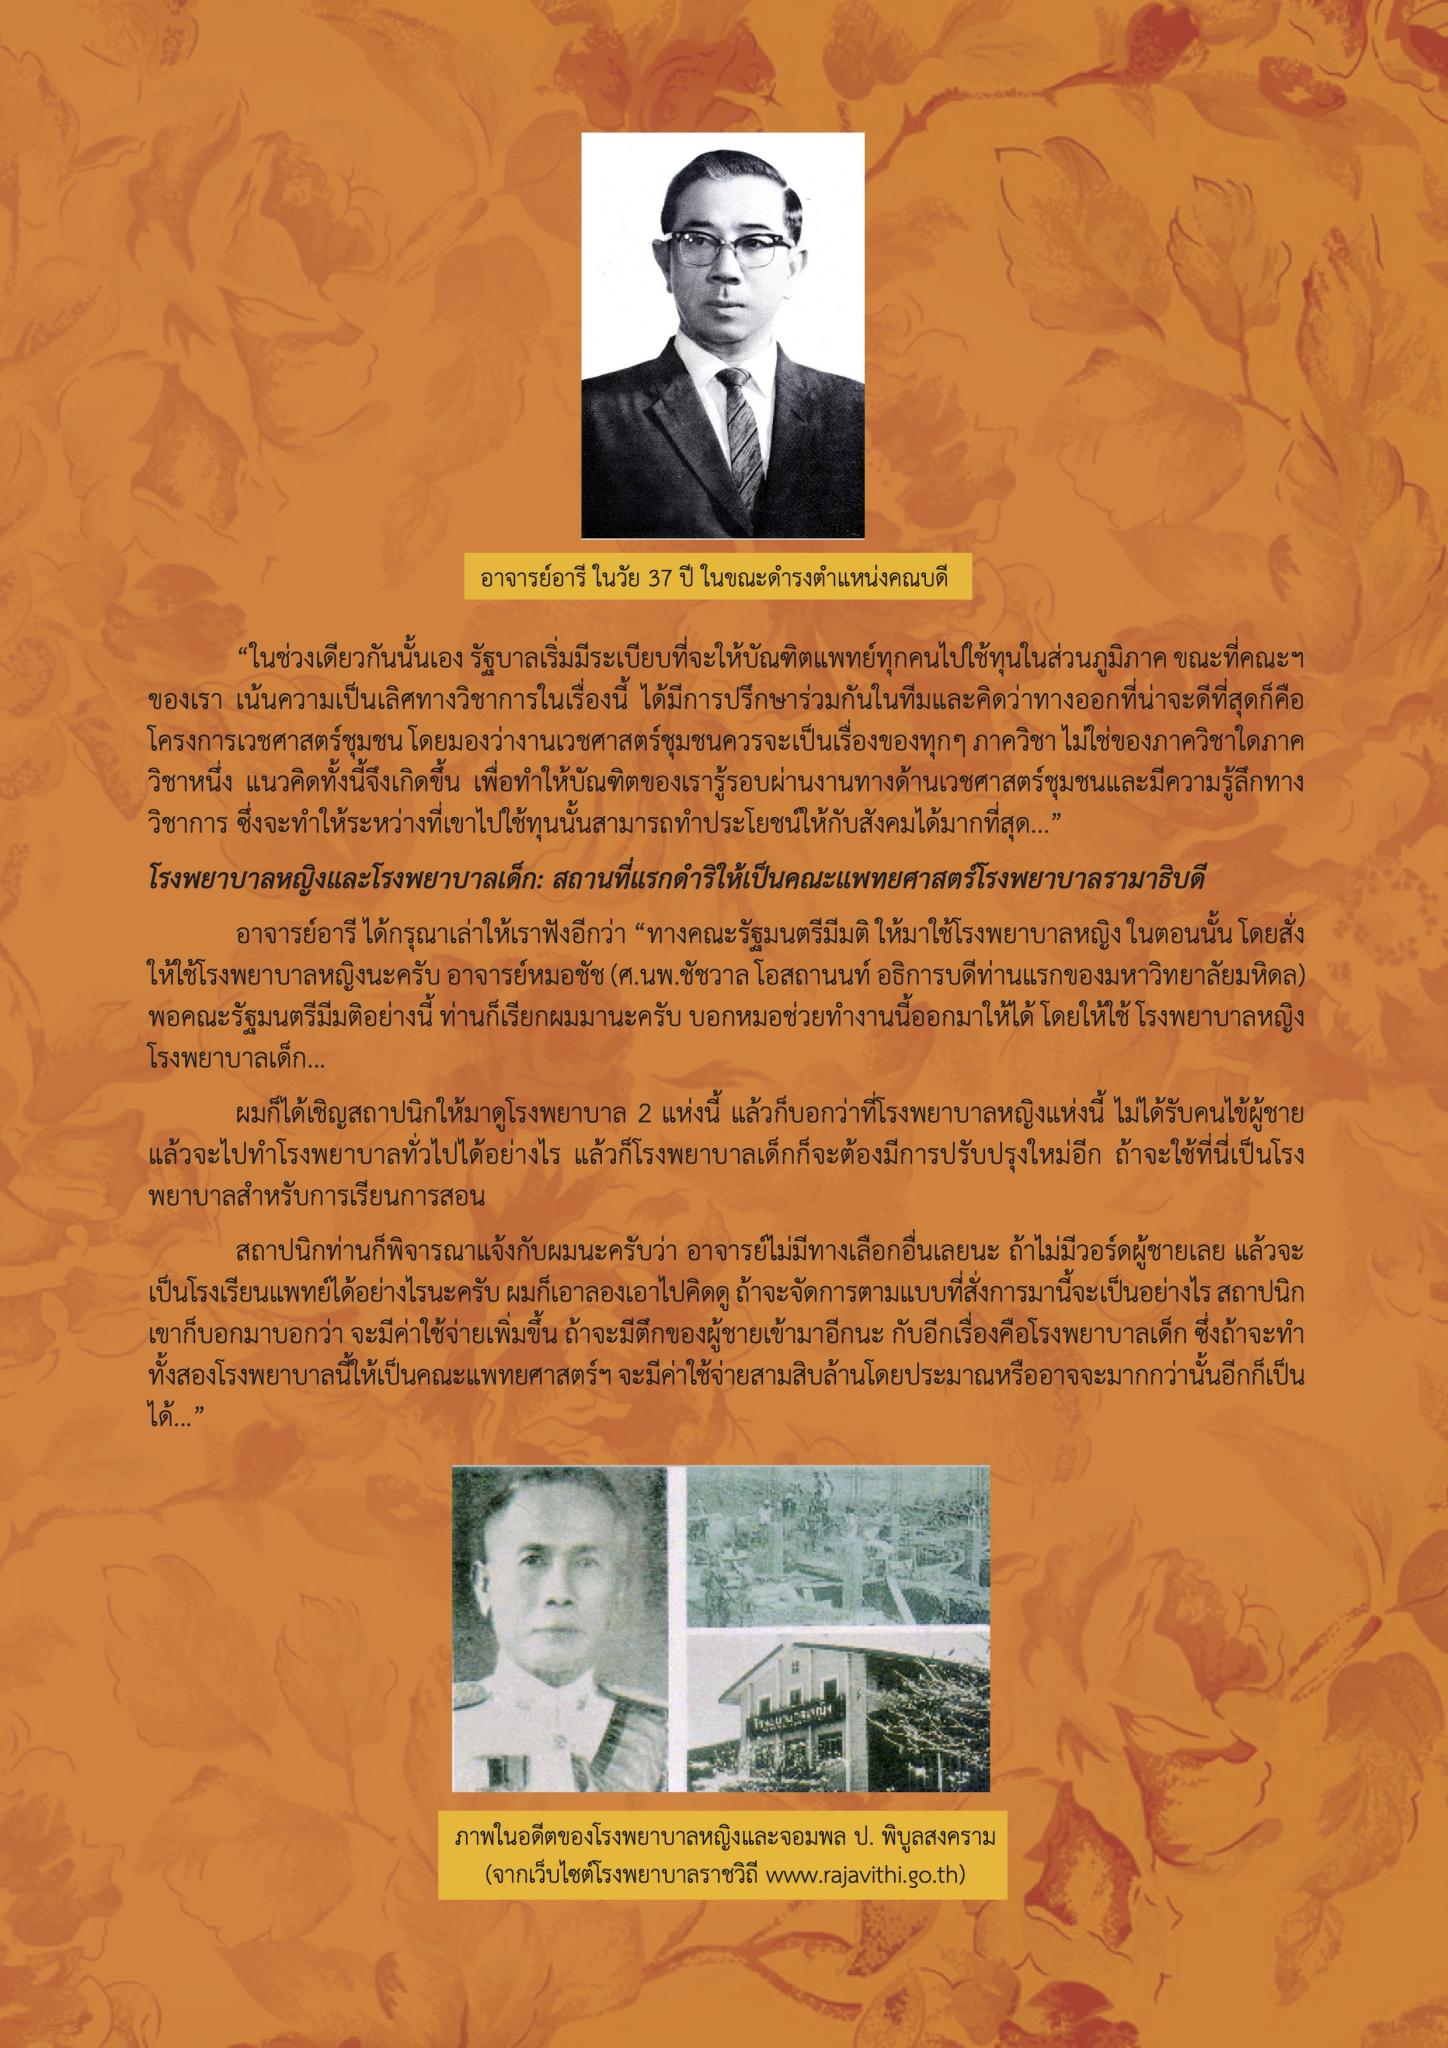 90 ปี อารี วัลยะเสวี ปฐมคณบดี ปูชนียบุคคล   ตอนที่ 2 : ก่อเกิดรามาธิบดีเกริกไกรสร้างสรรค์แพทยศาสตร์ไทยให้รุ่งเรือง